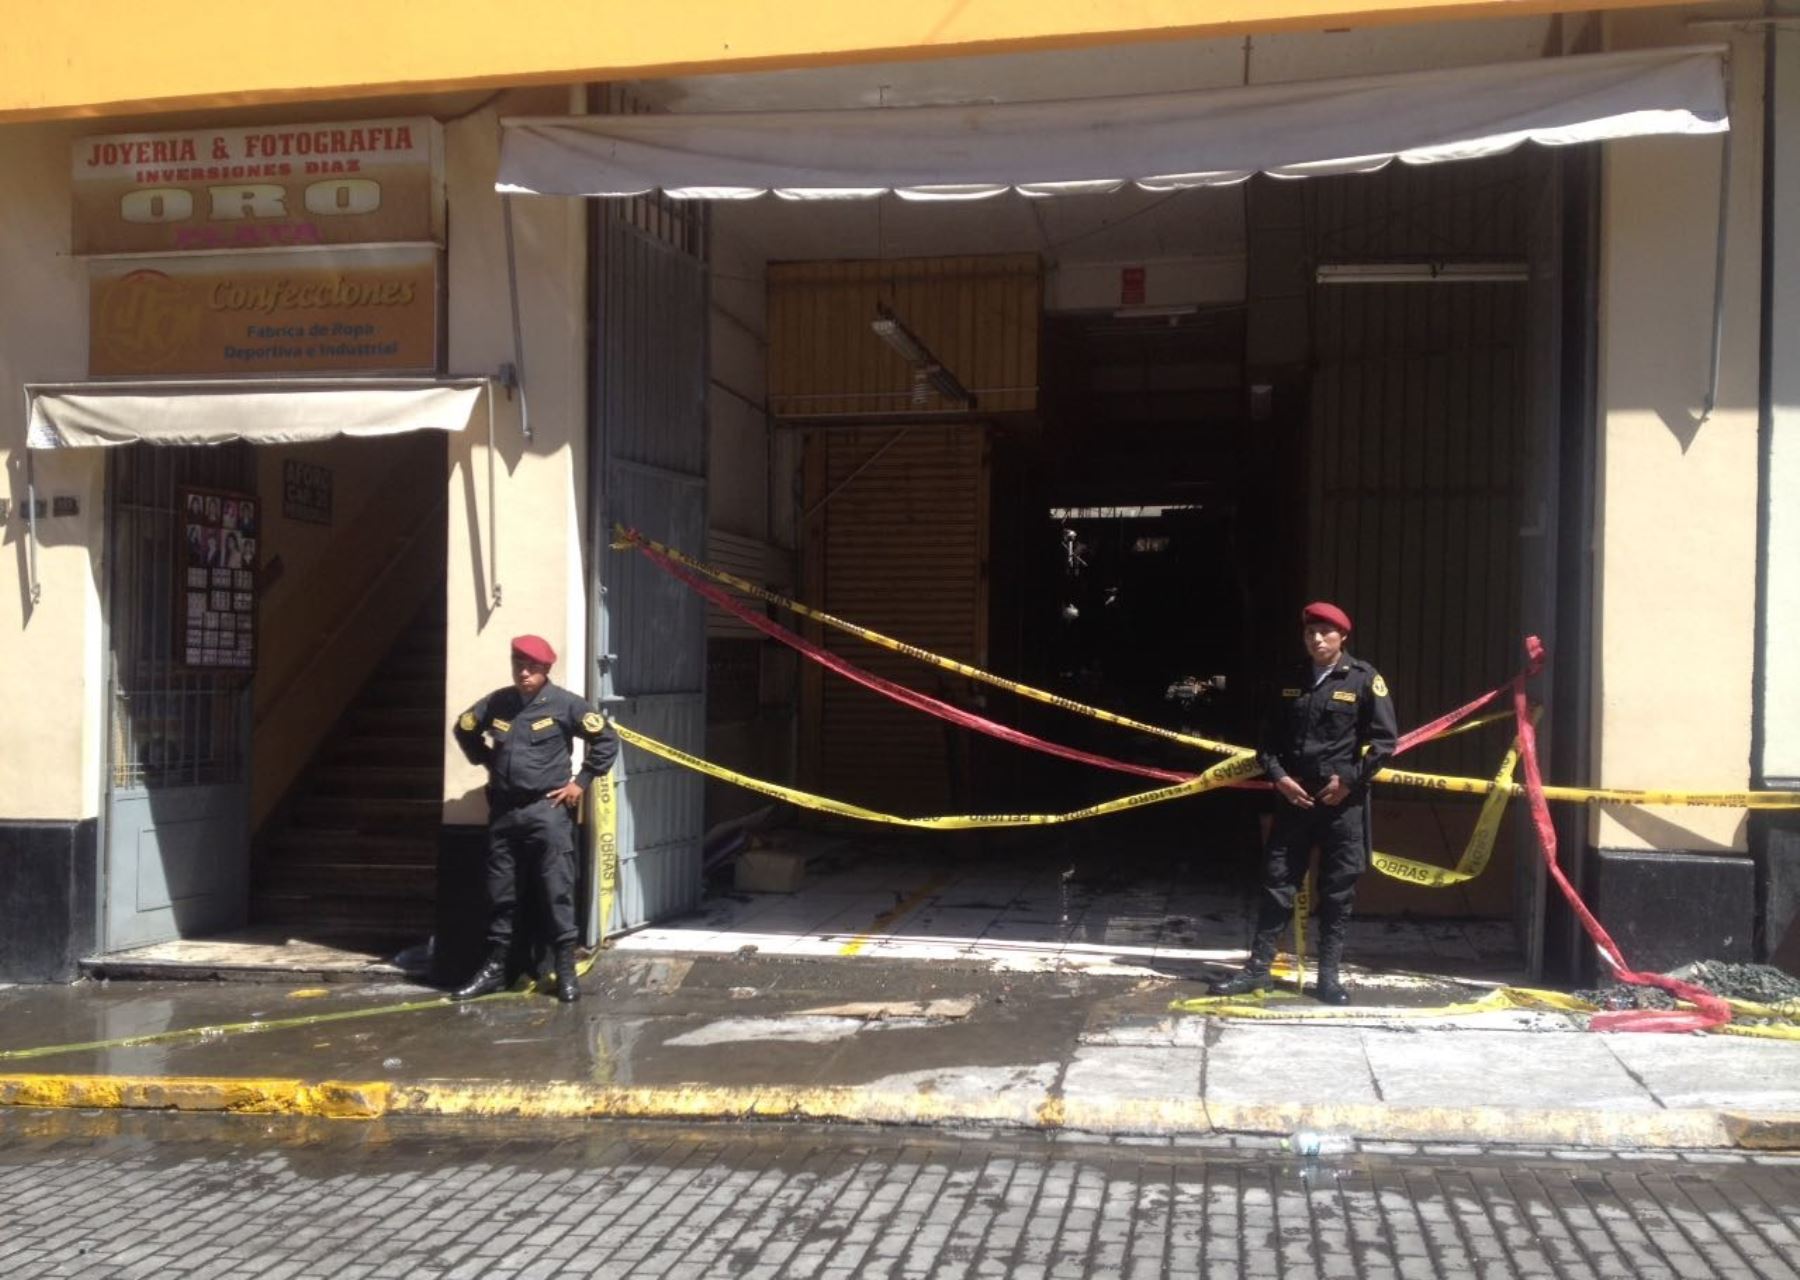 Galería donde ocurrió el incendio no contaba con licencia, afirman autoridades de Arequipa. ANDINA